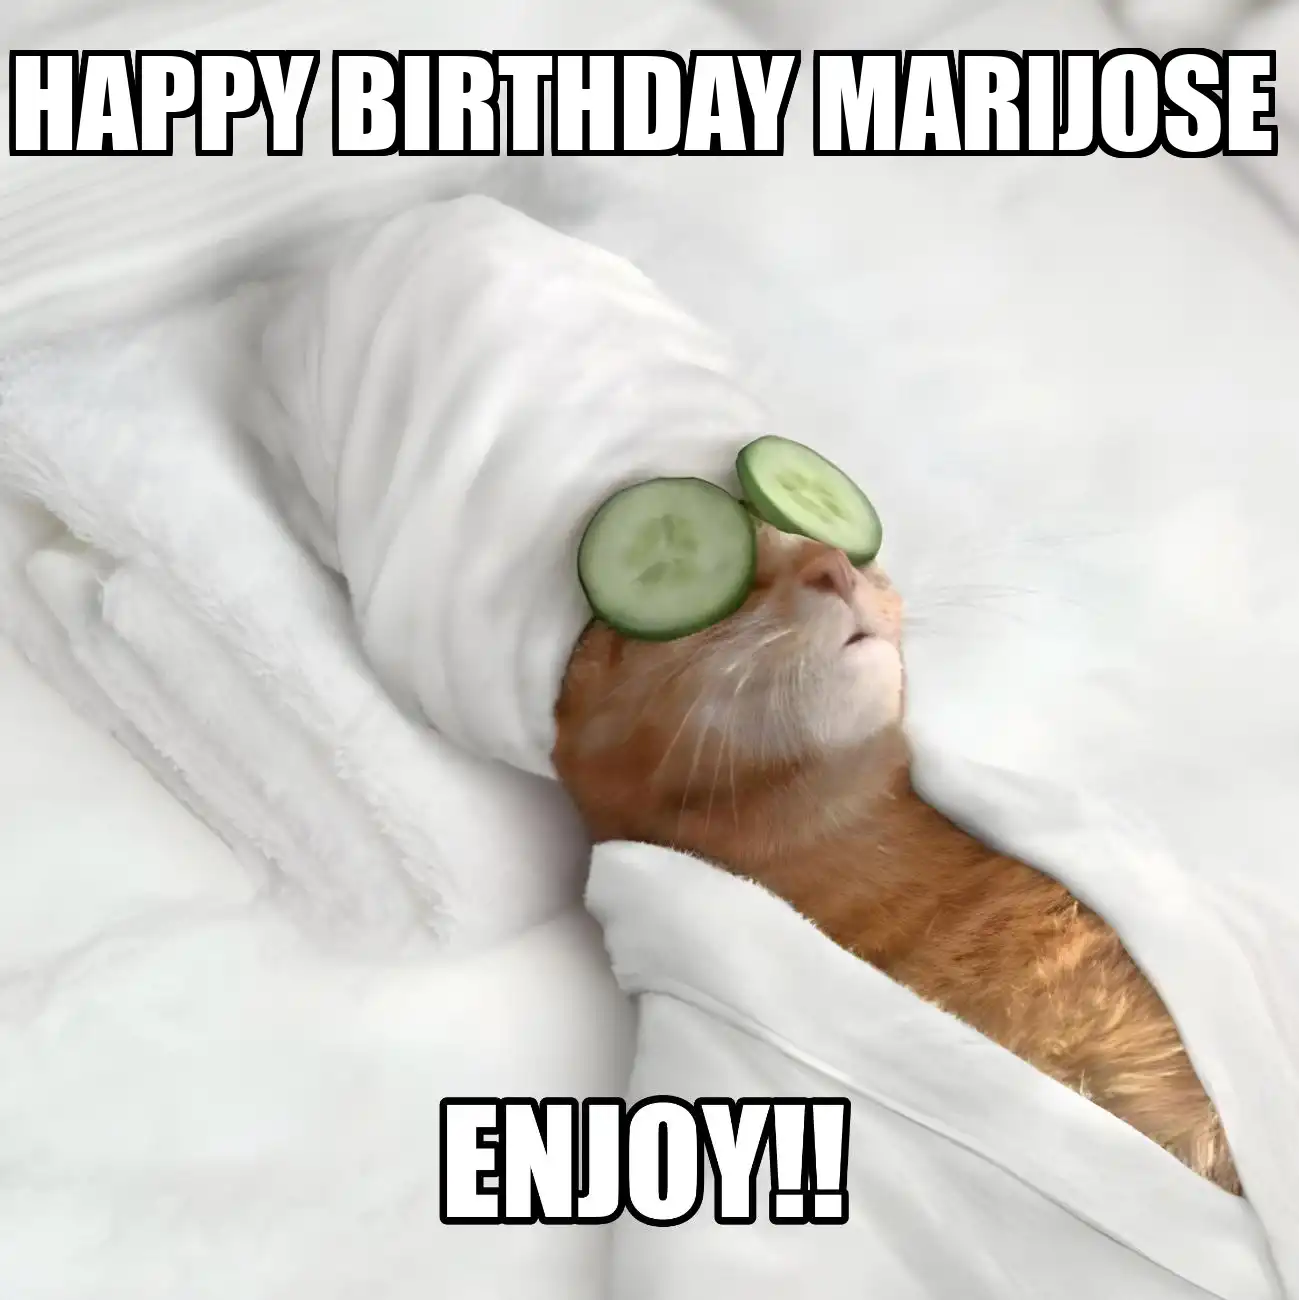 Happy Birthday Marijose Enjoy Cat Meme